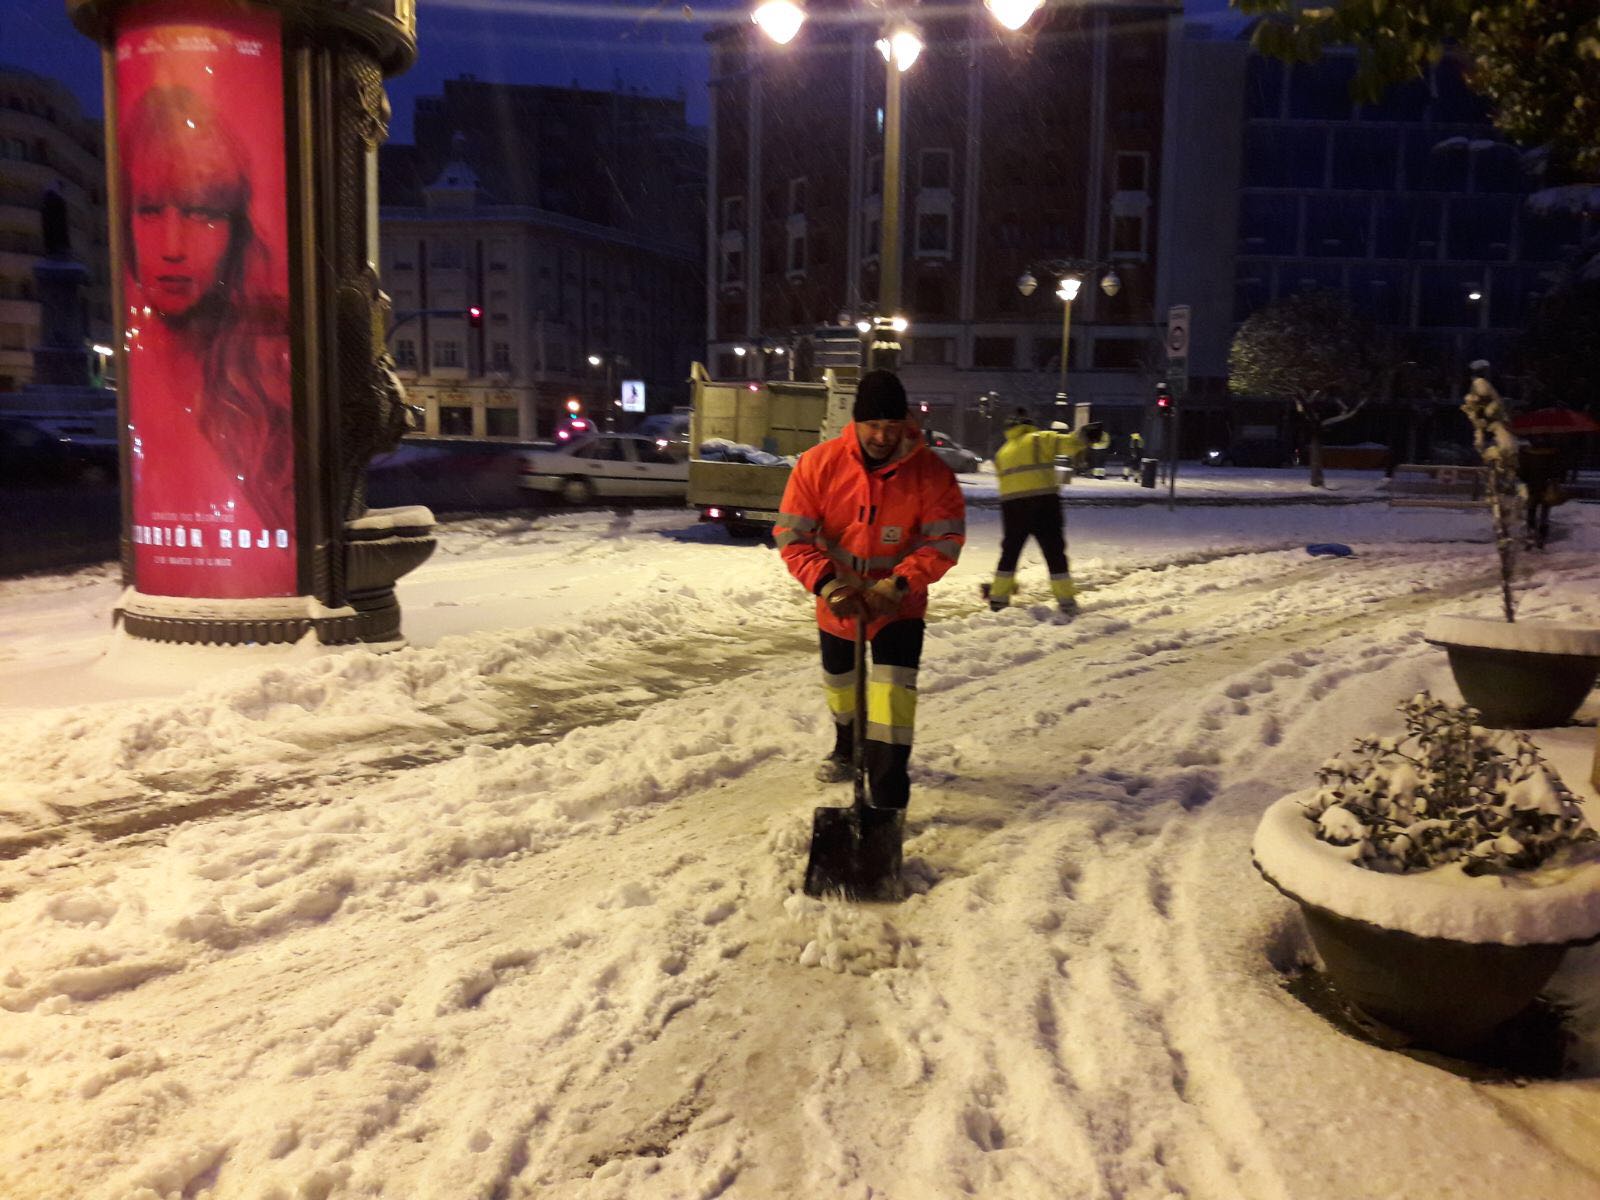 Hasta 250 operarios municipales trabajan en las labores de limpieza de la ciudad tras la nevada caída durante la madrugada. El espesor, de hasta 15 centímetros de nieve, ha complicado los trabajos